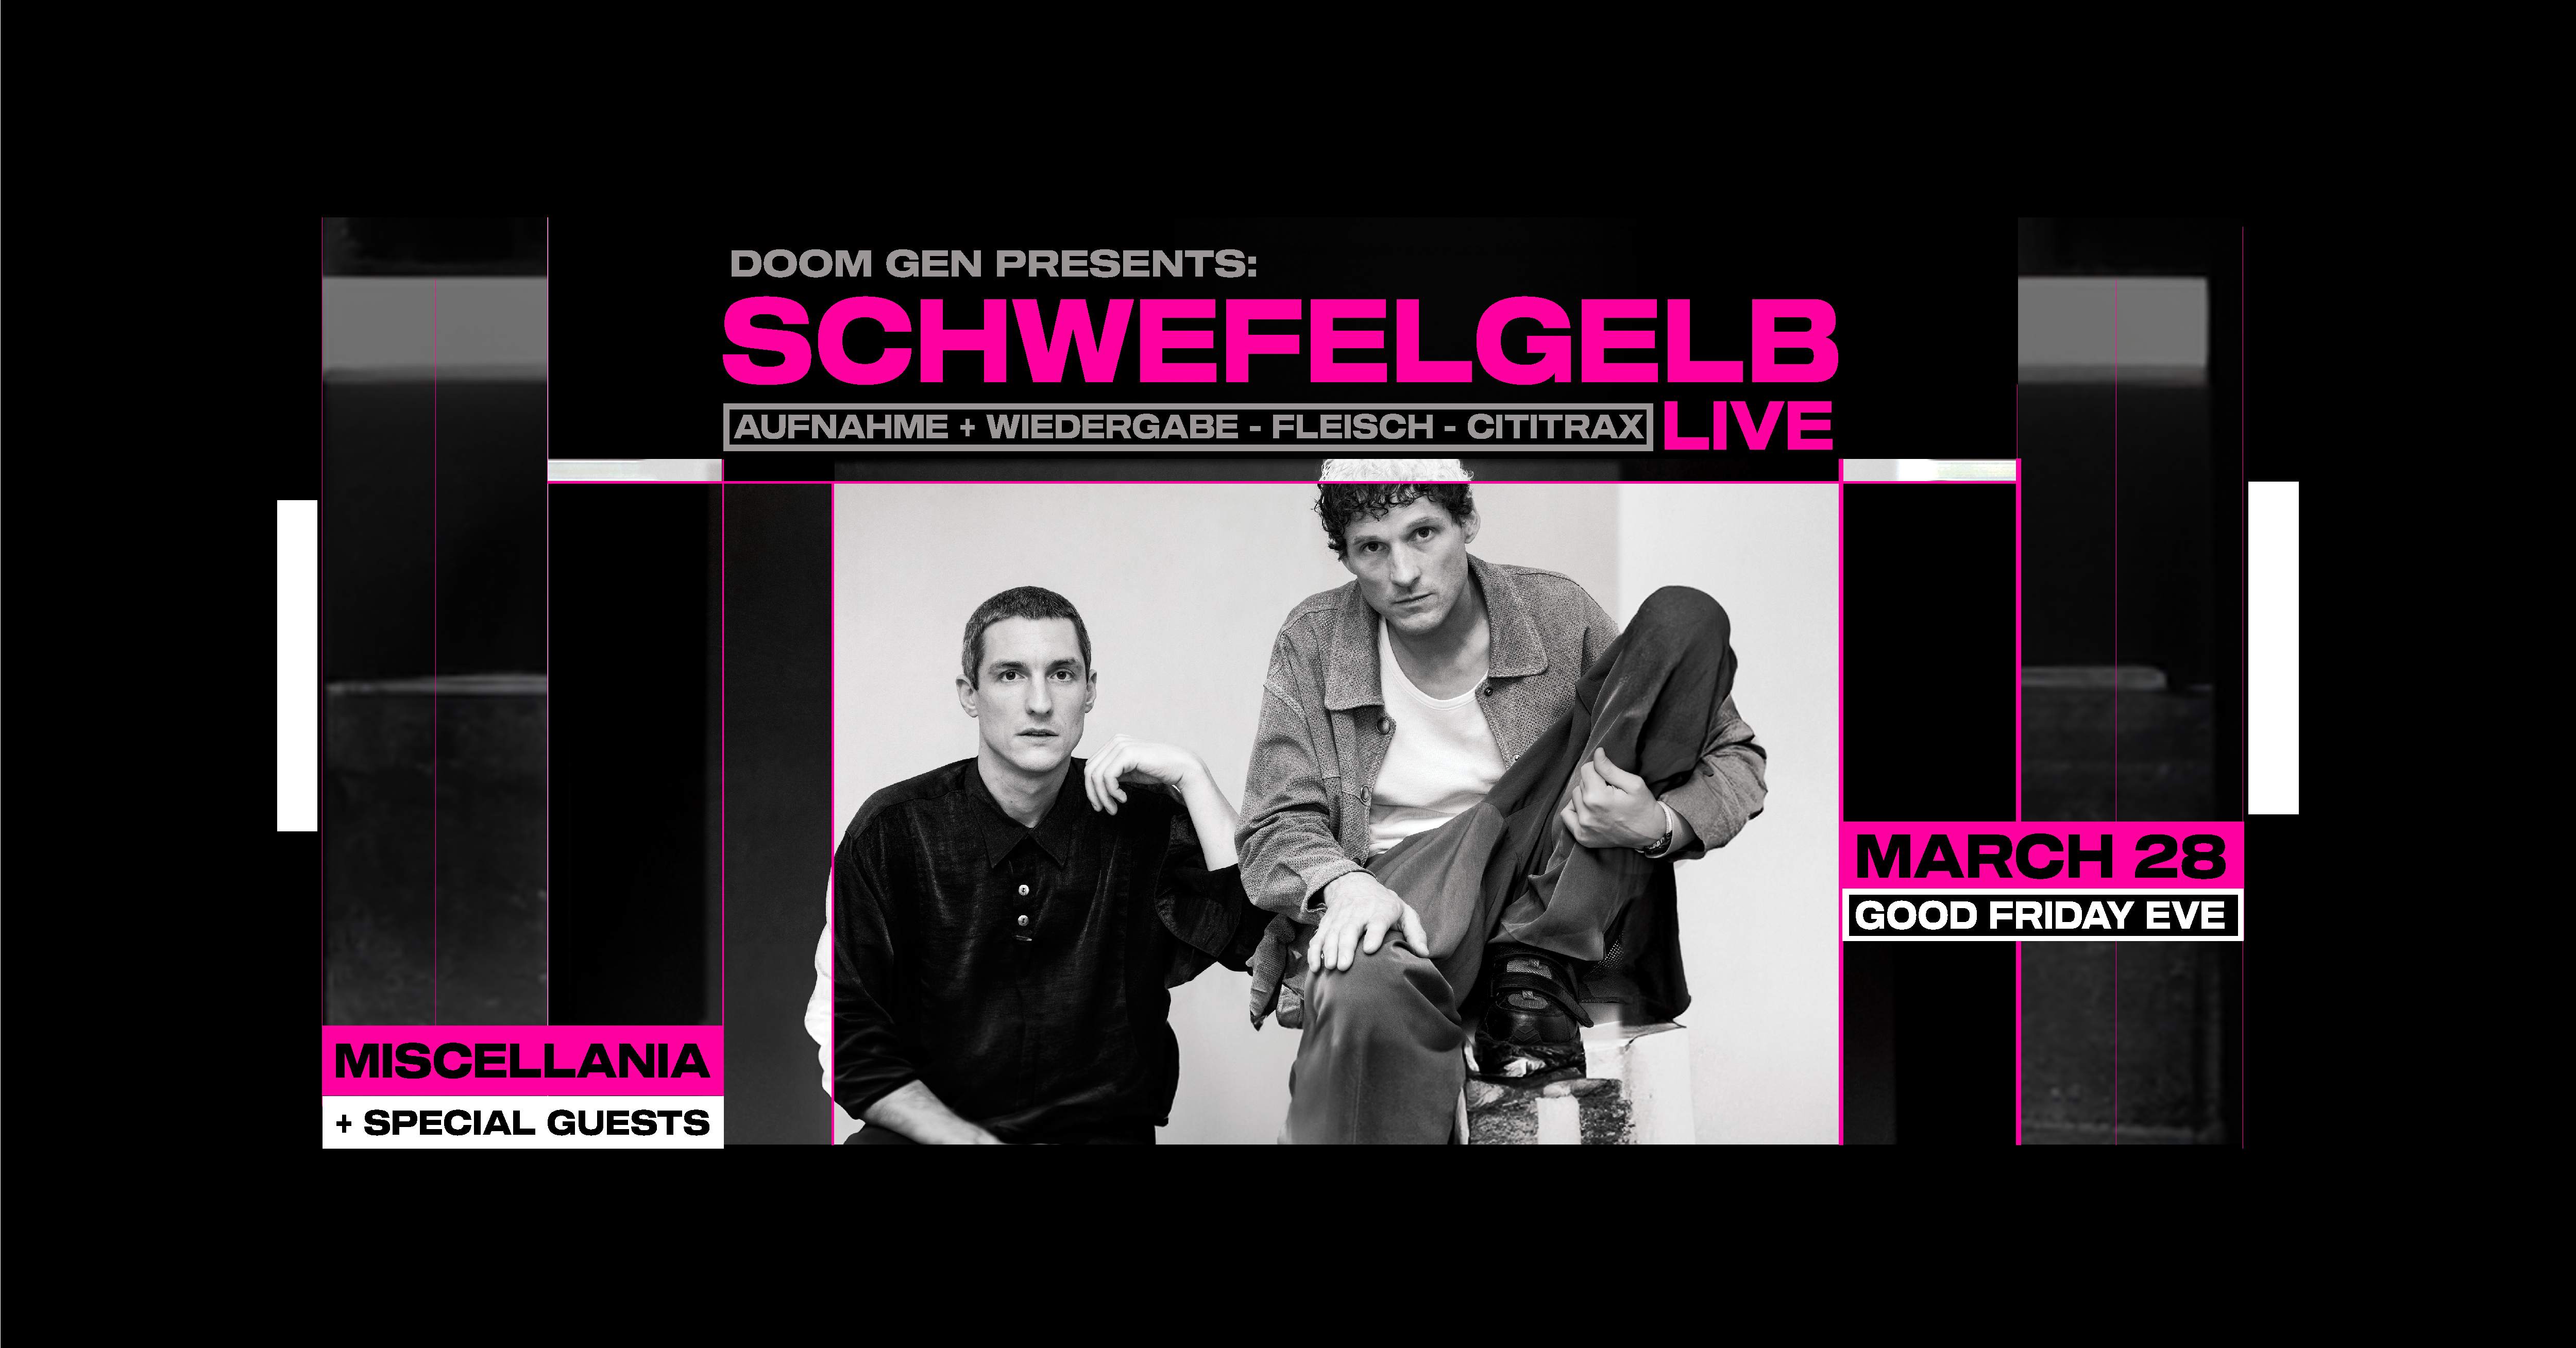 DOOM GEN presents: Schwefelgelb LIVE (DE) Good Friday Public Holiday Eve - フライヤー表